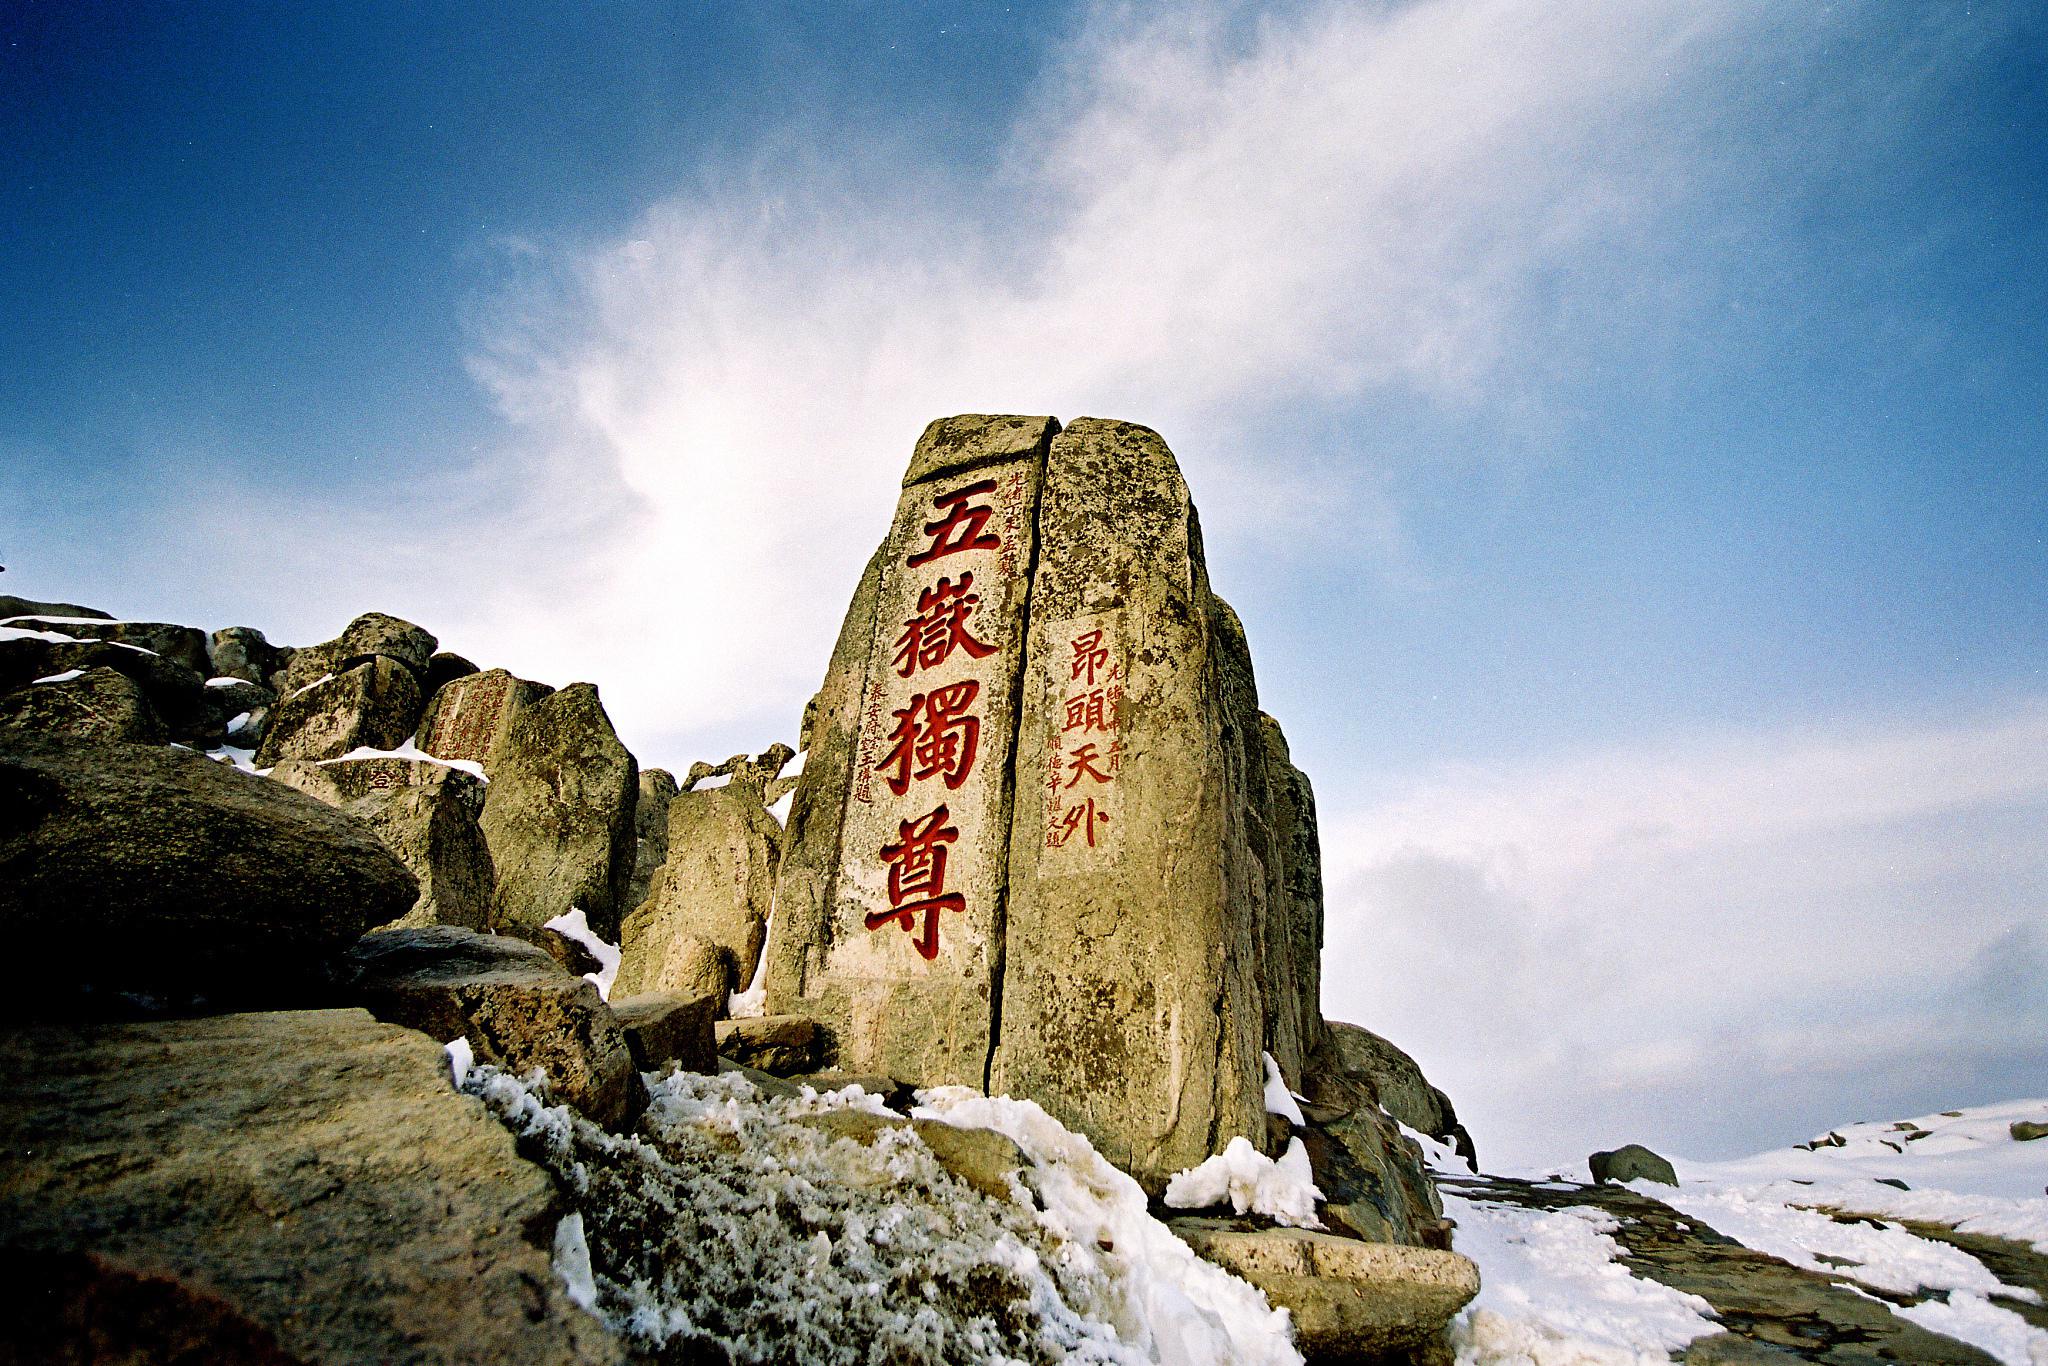 泰山,位于山东省泰安市,是中国五岳之首,也是世界文化与自然双重遗产